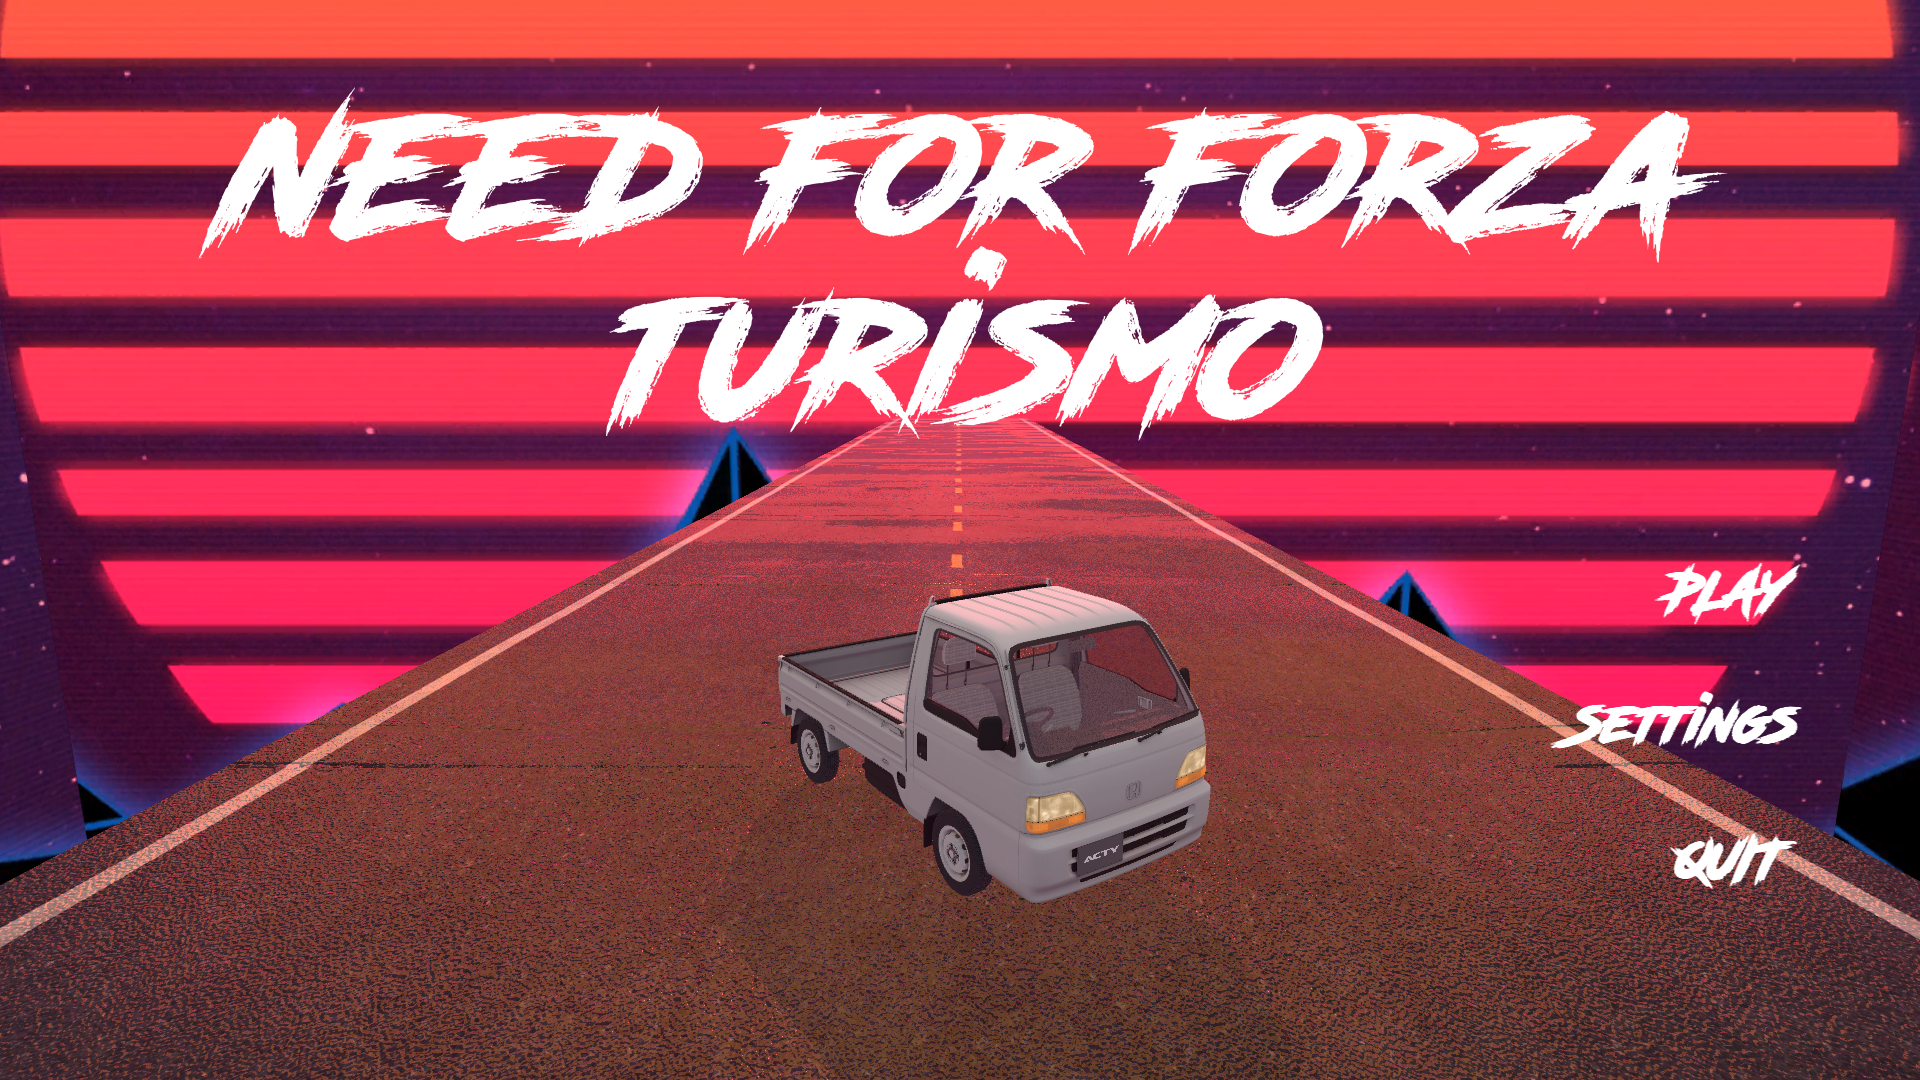 Le menu du jeu Need For Forza Turismo avec un camion japonais au centre